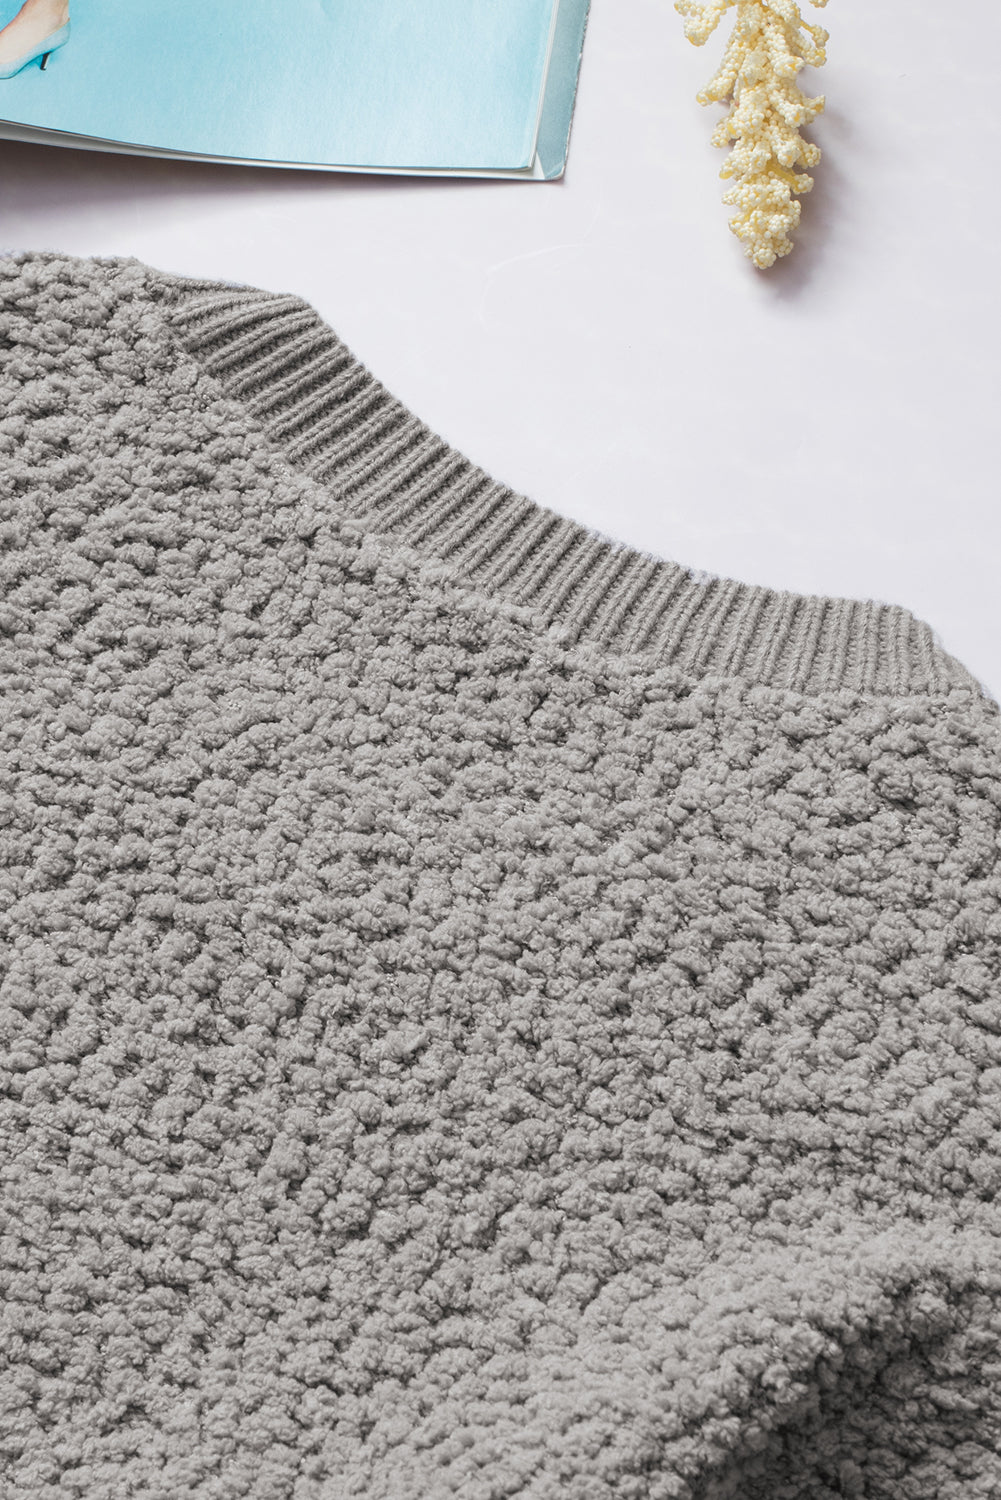 Siv pleten pulover v obliki pokovke z dvojnimi žepi